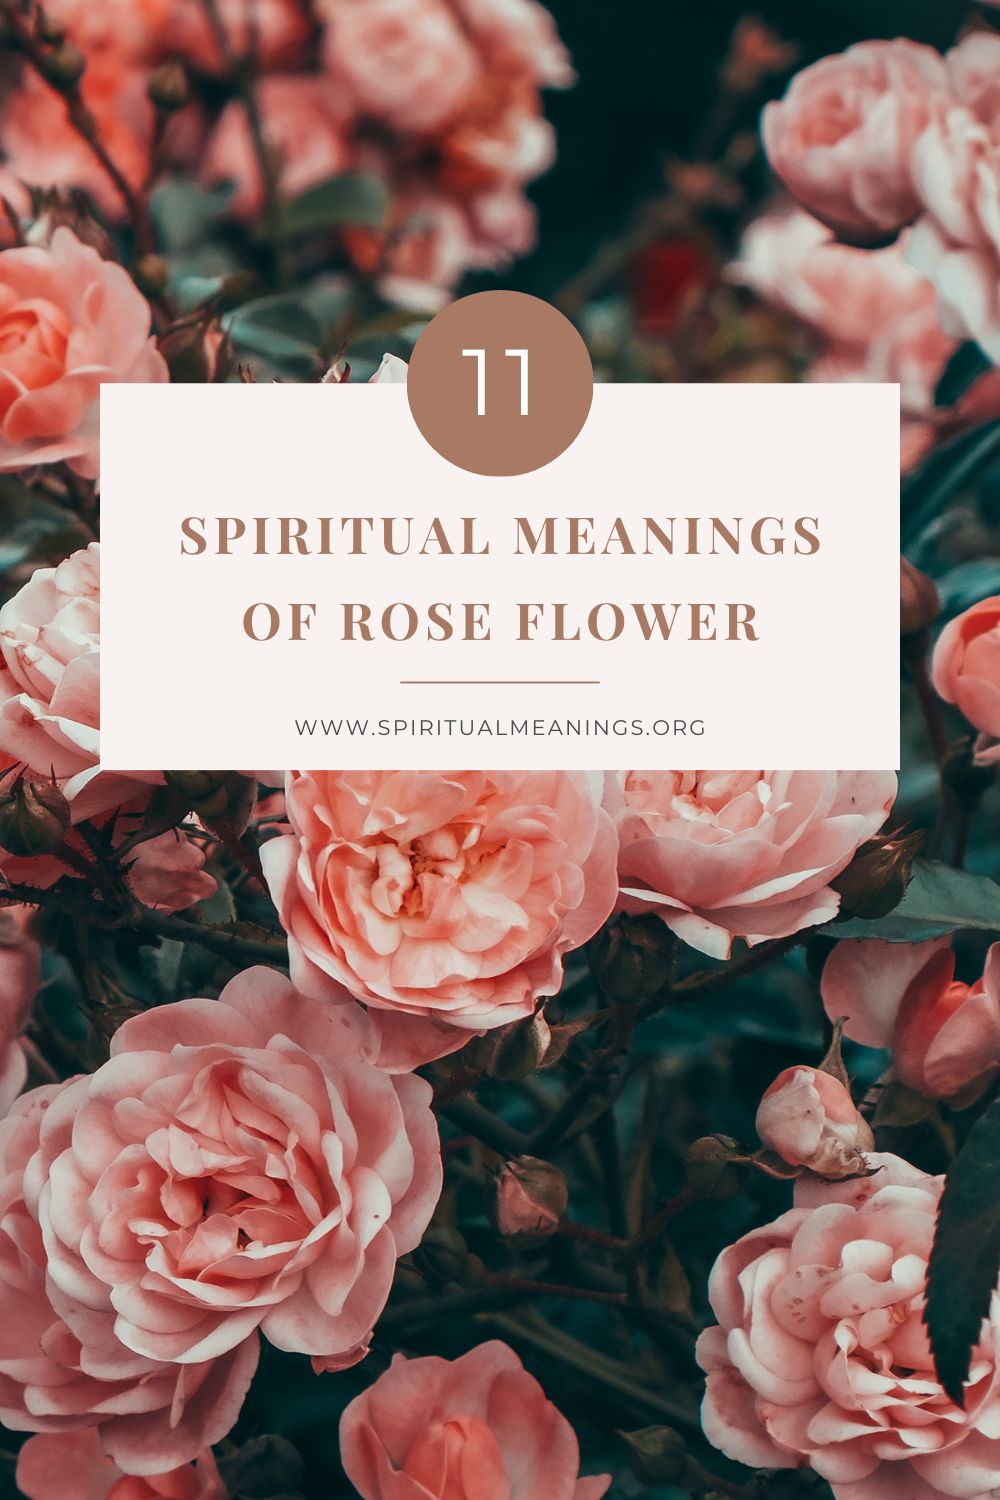 11 Spiritual Meanings of Rose Flower pin